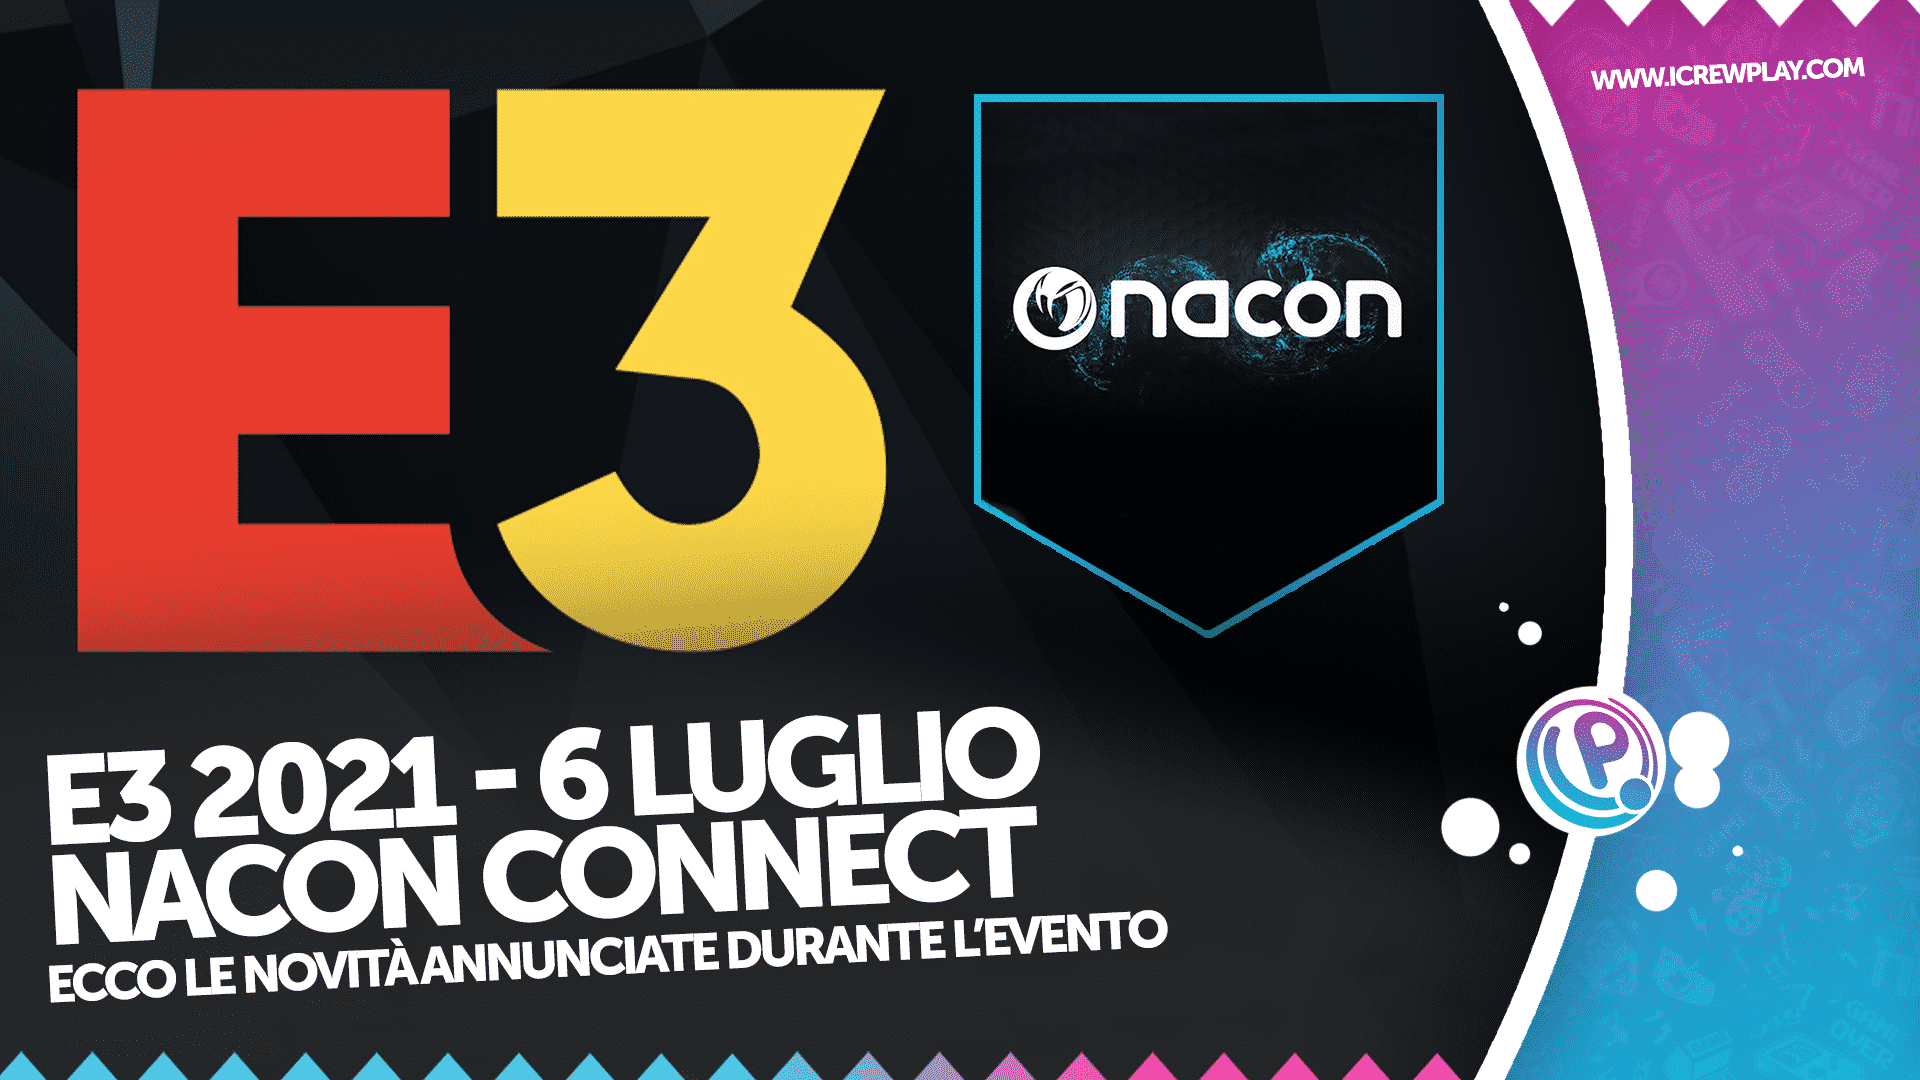 E3 2021, Nacon Connect, E3 2021 Nacon Connect, Nacon Connect Annunci, Giochi Nacon Connect